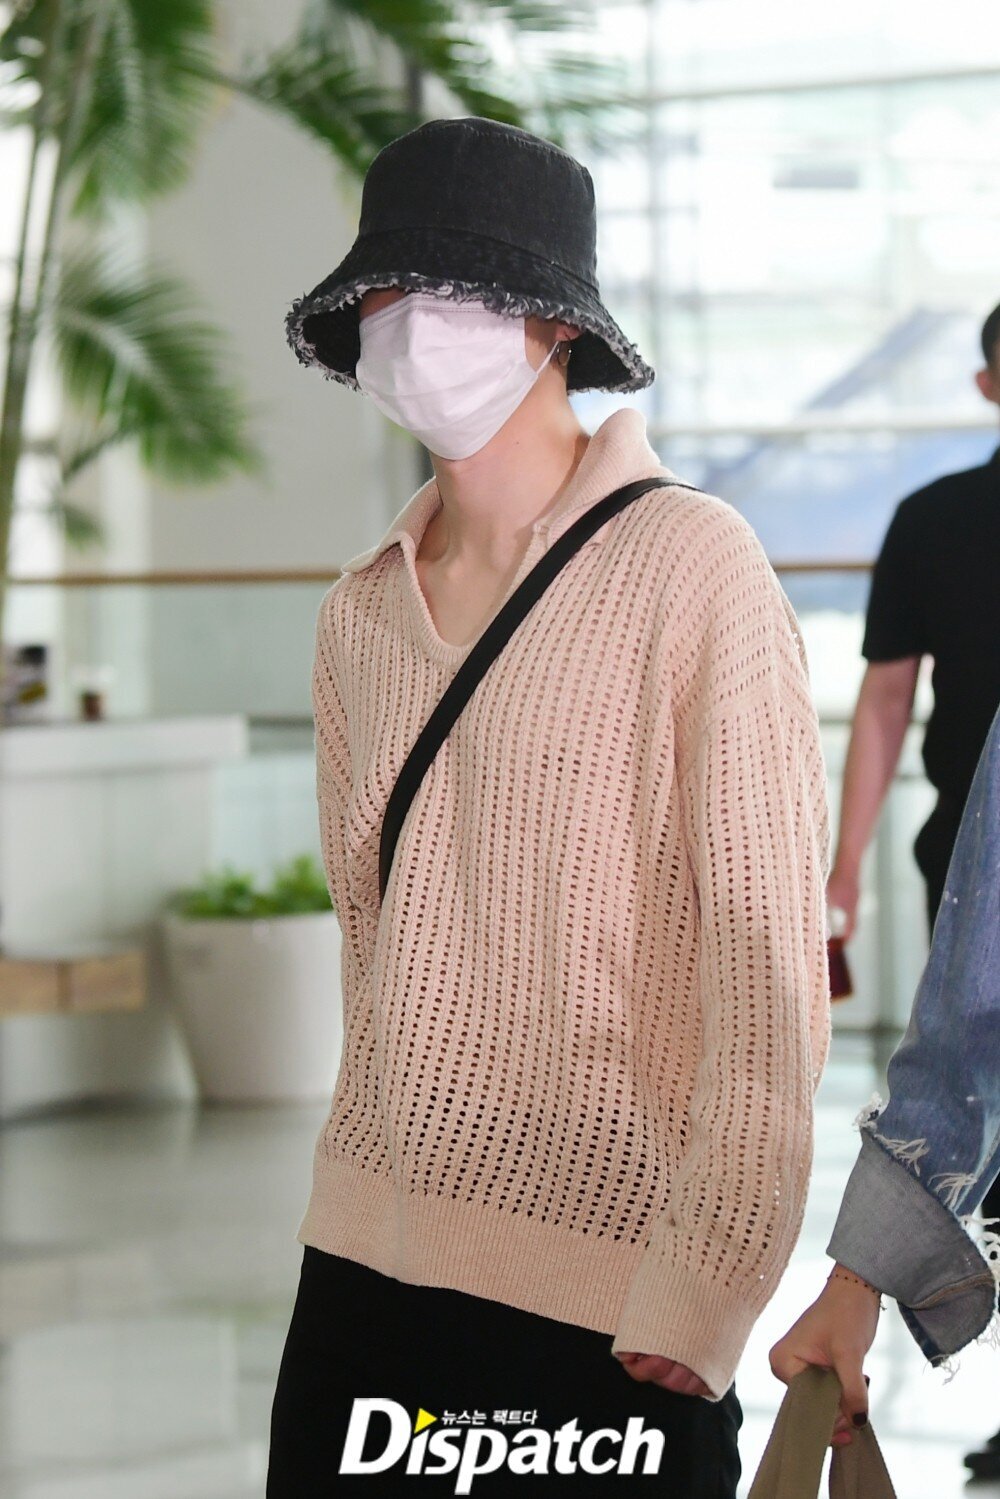 BTS JIMIN best airport fashion looks 